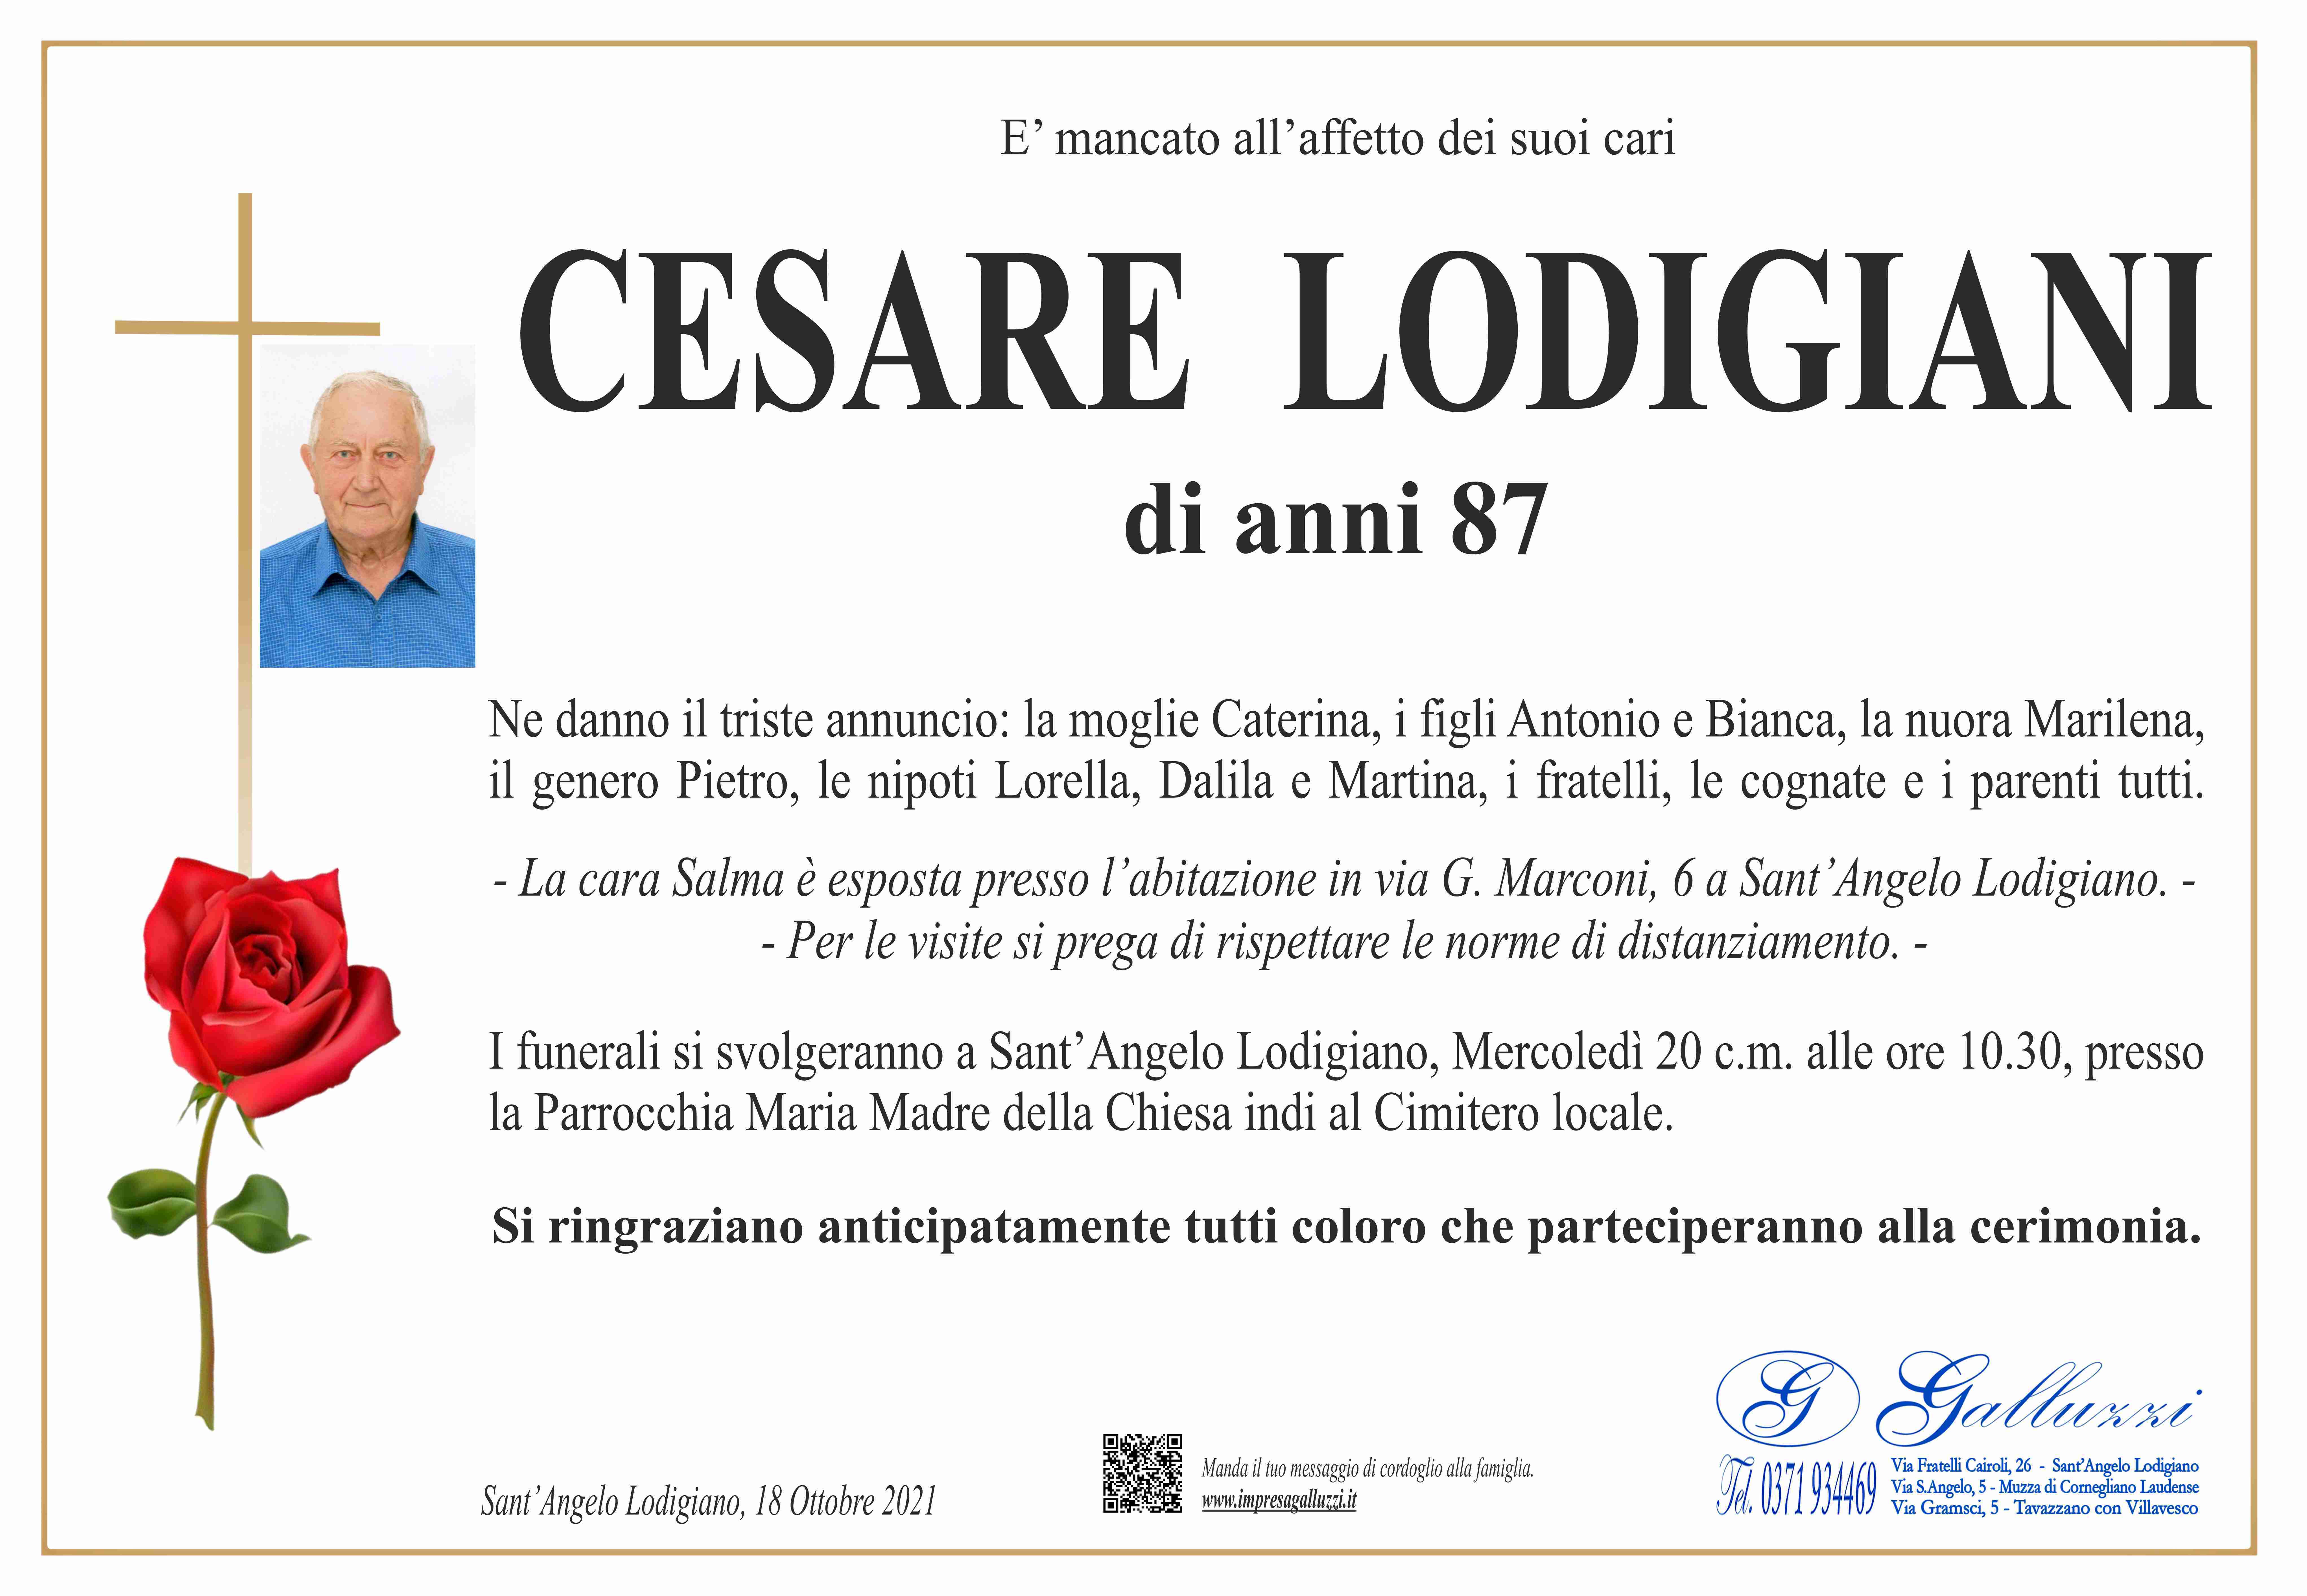 Cesare Lodigiani